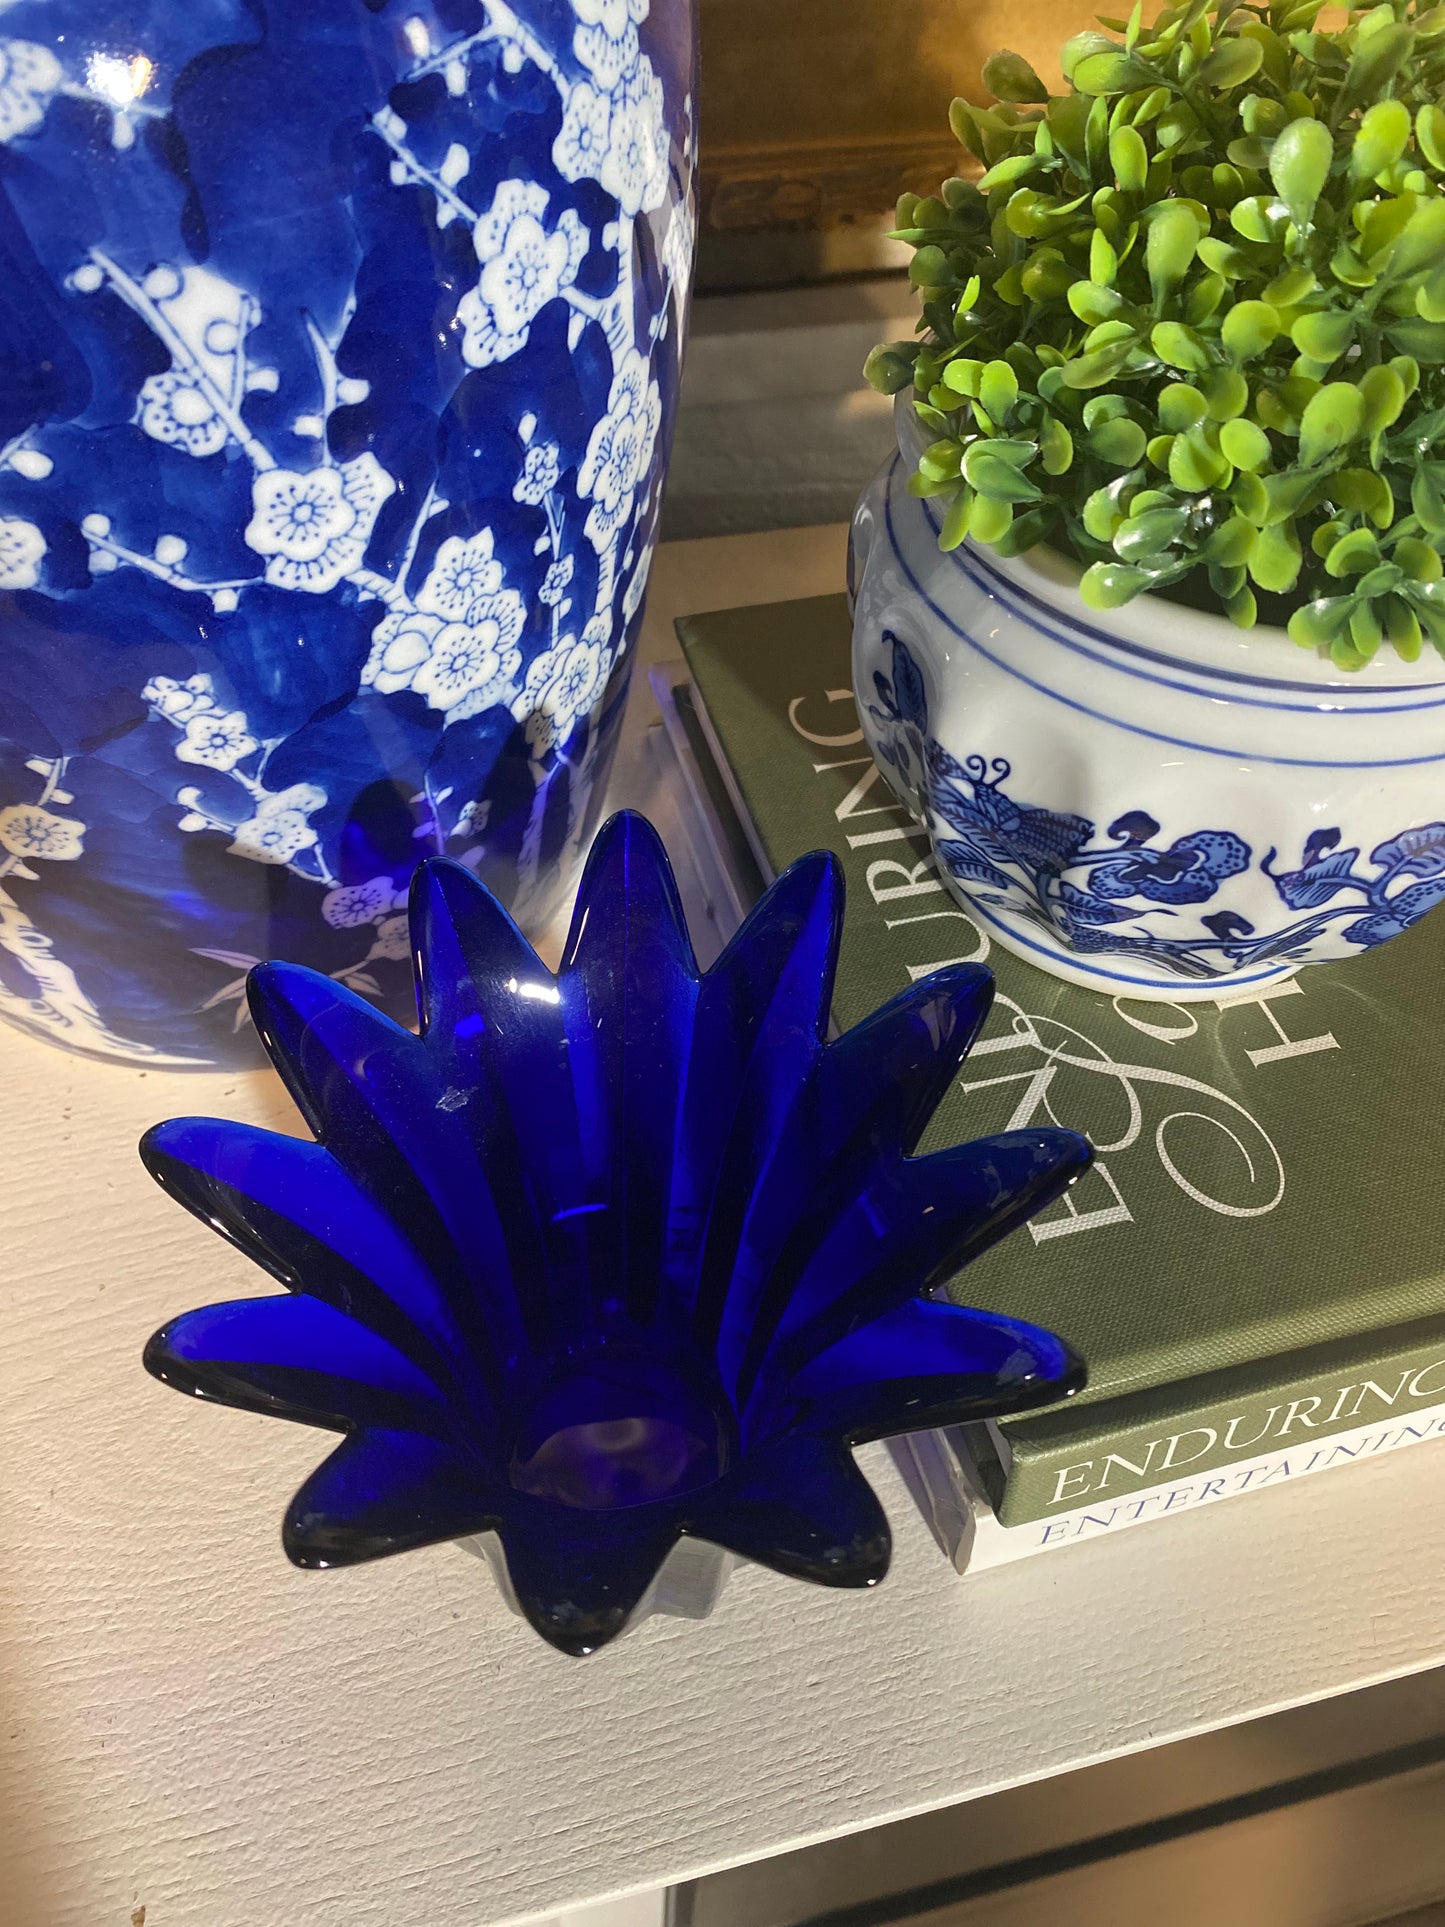 Handmade Cobalt Blue Glass Votive Candle Holder Vase by Studio Nova - Made in Portugal"